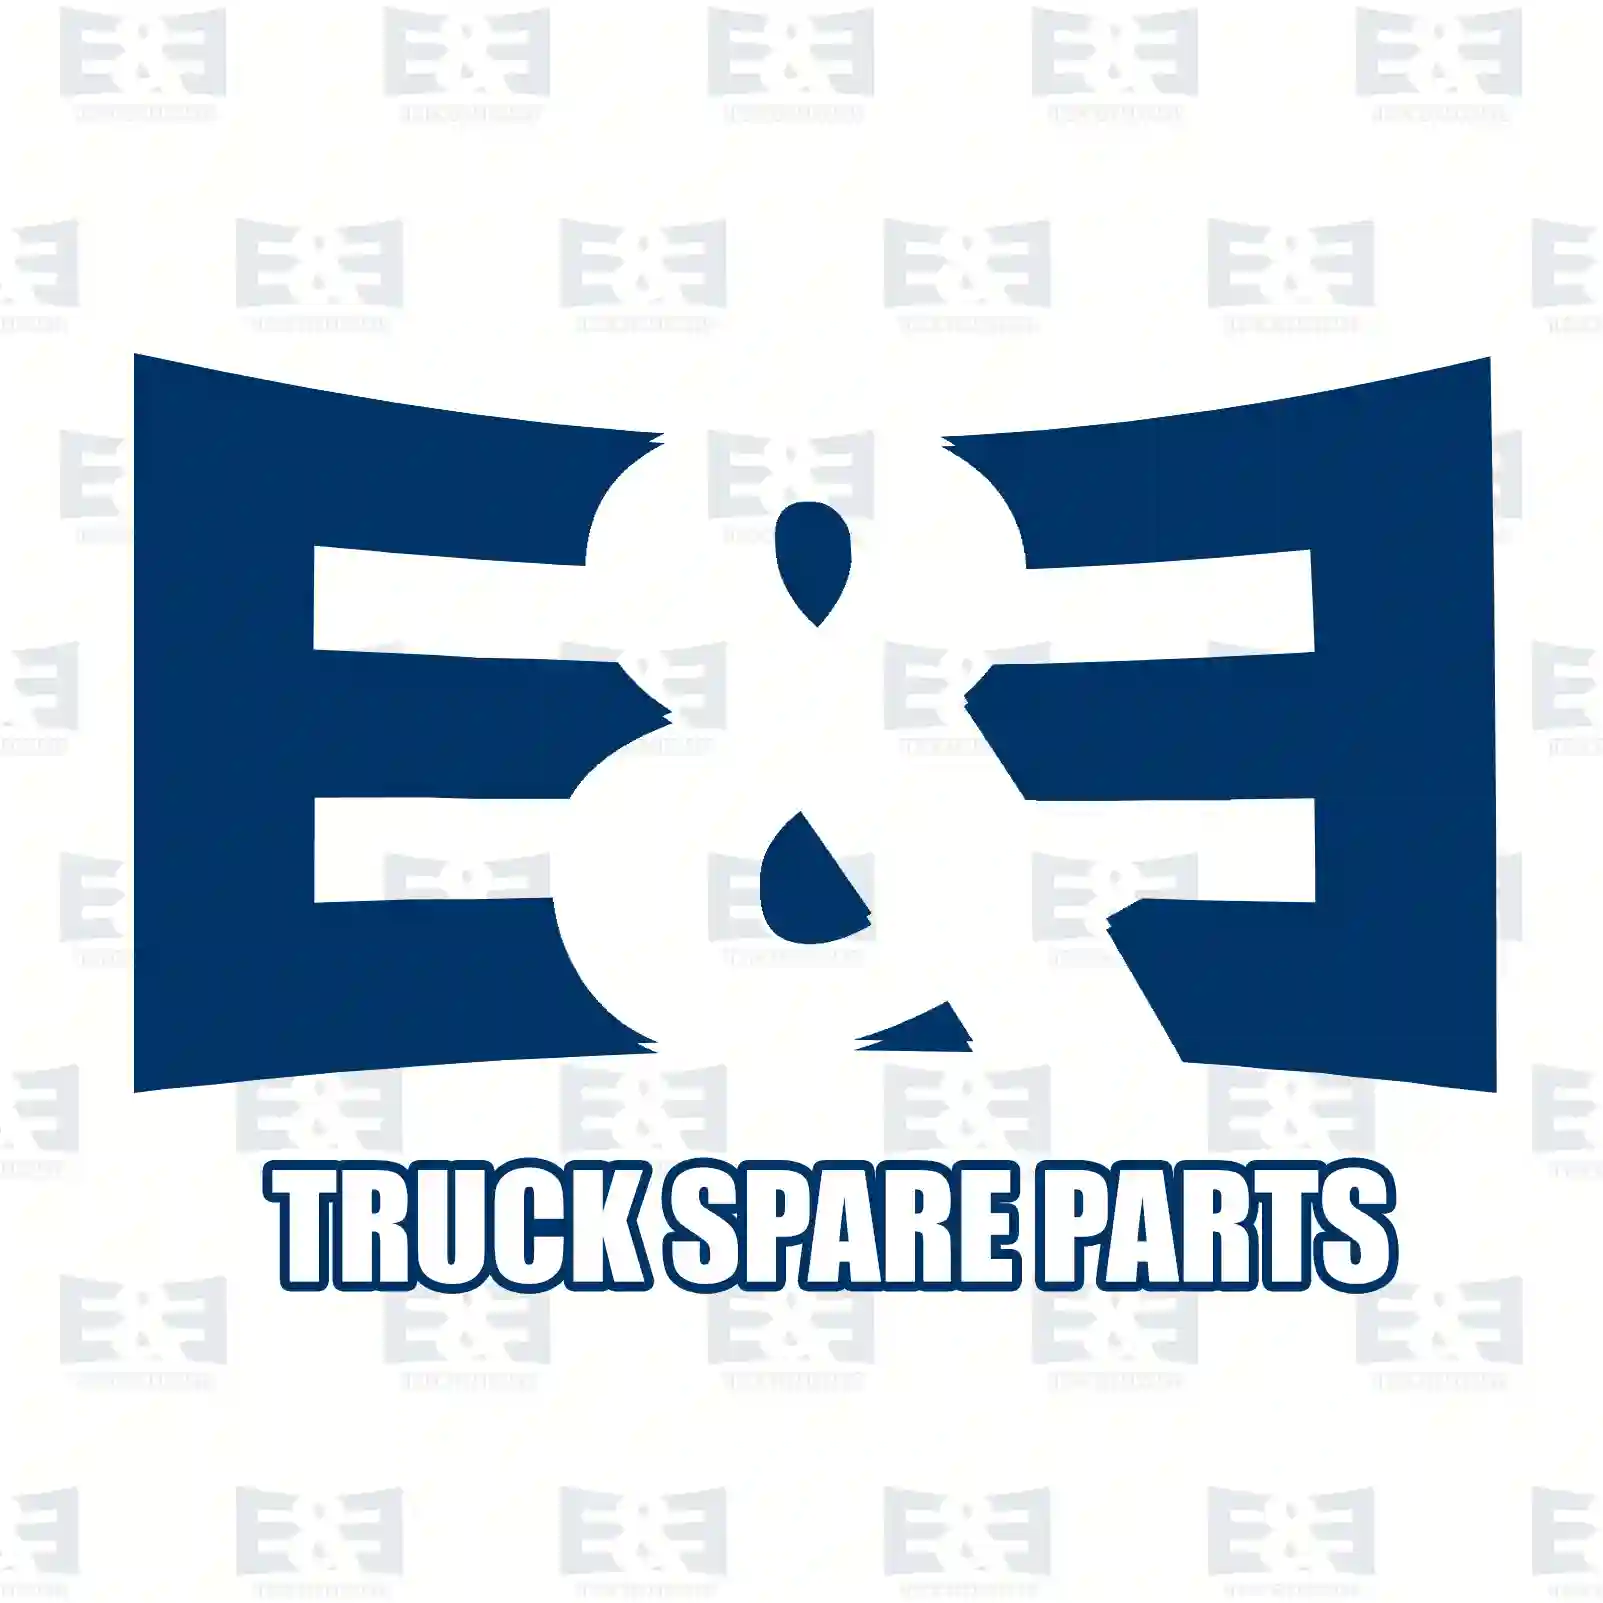 Drive shaft, left, 2E2279639, 1349788080, 1369961080, 1608505480 ||  2E2279639 E&E Truck Spare Parts | Truck Spare Parts, Auotomotive Spare Parts Drive shaft, left, 2E2279639, 1349788080, 1369961080, 1608505480 ||  2E2279639 E&E Truck Spare Parts | Truck Spare Parts, Auotomotive Spare Parts